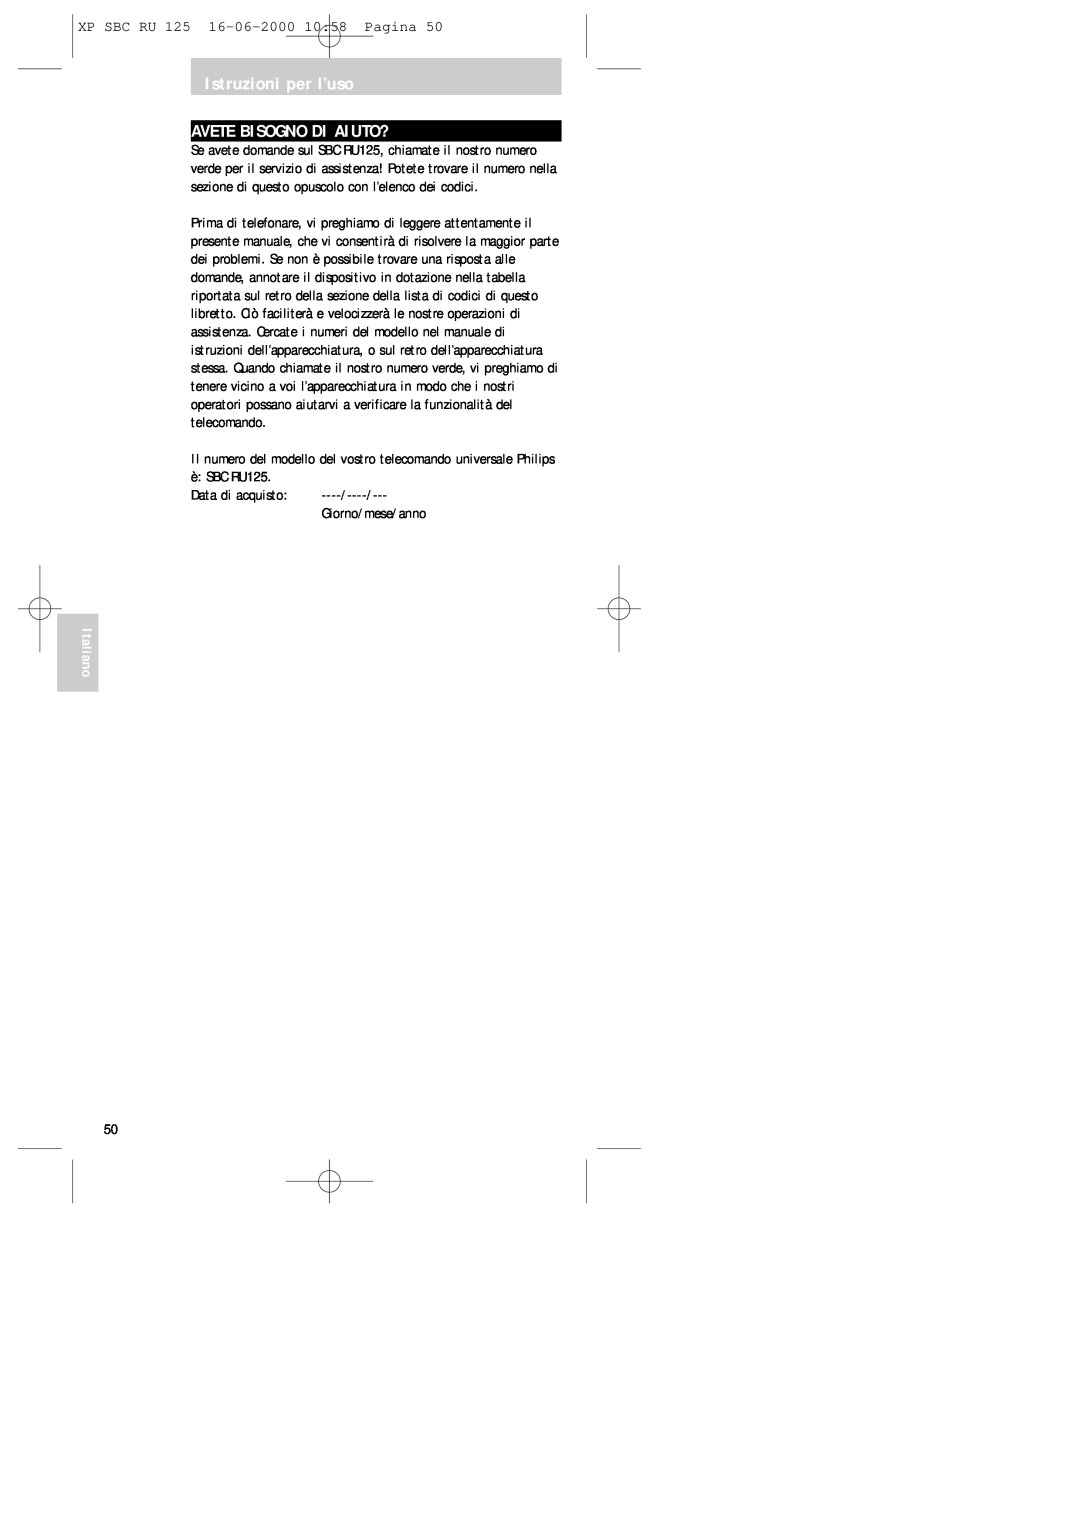 Philips RU125 manual Istruzioni per l’uso AVETE BISOGNO DI AIUTO?, XP SBC RU 125 16-06-200010 58 Pagina, Data di acquisto 